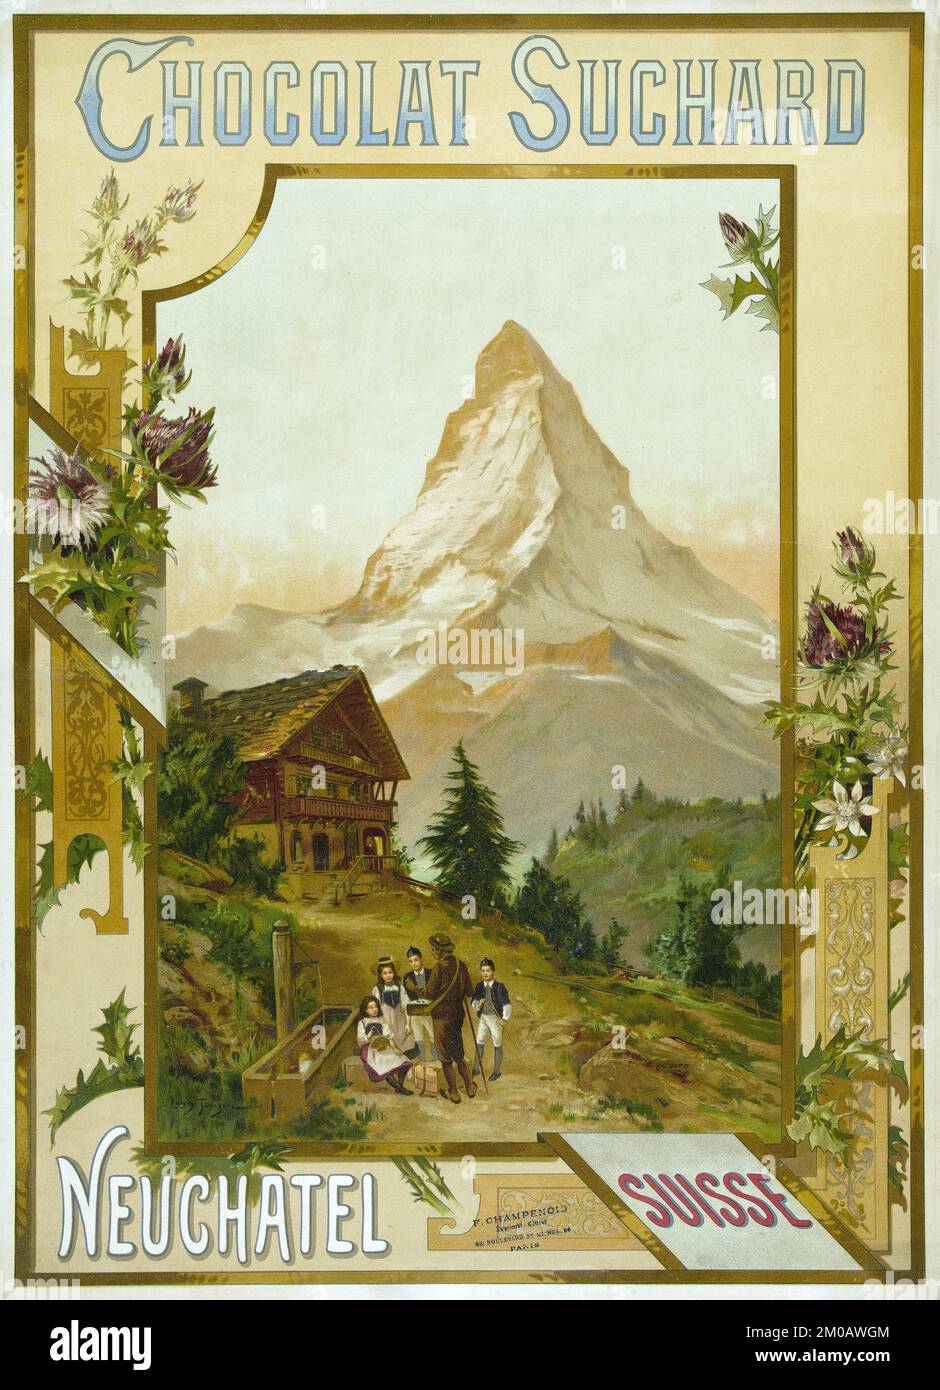 Chocolat Suchard. Neuchâtel, Suisse - affiche publicitaire de Louis Tauzin 1895 Banque D'Images